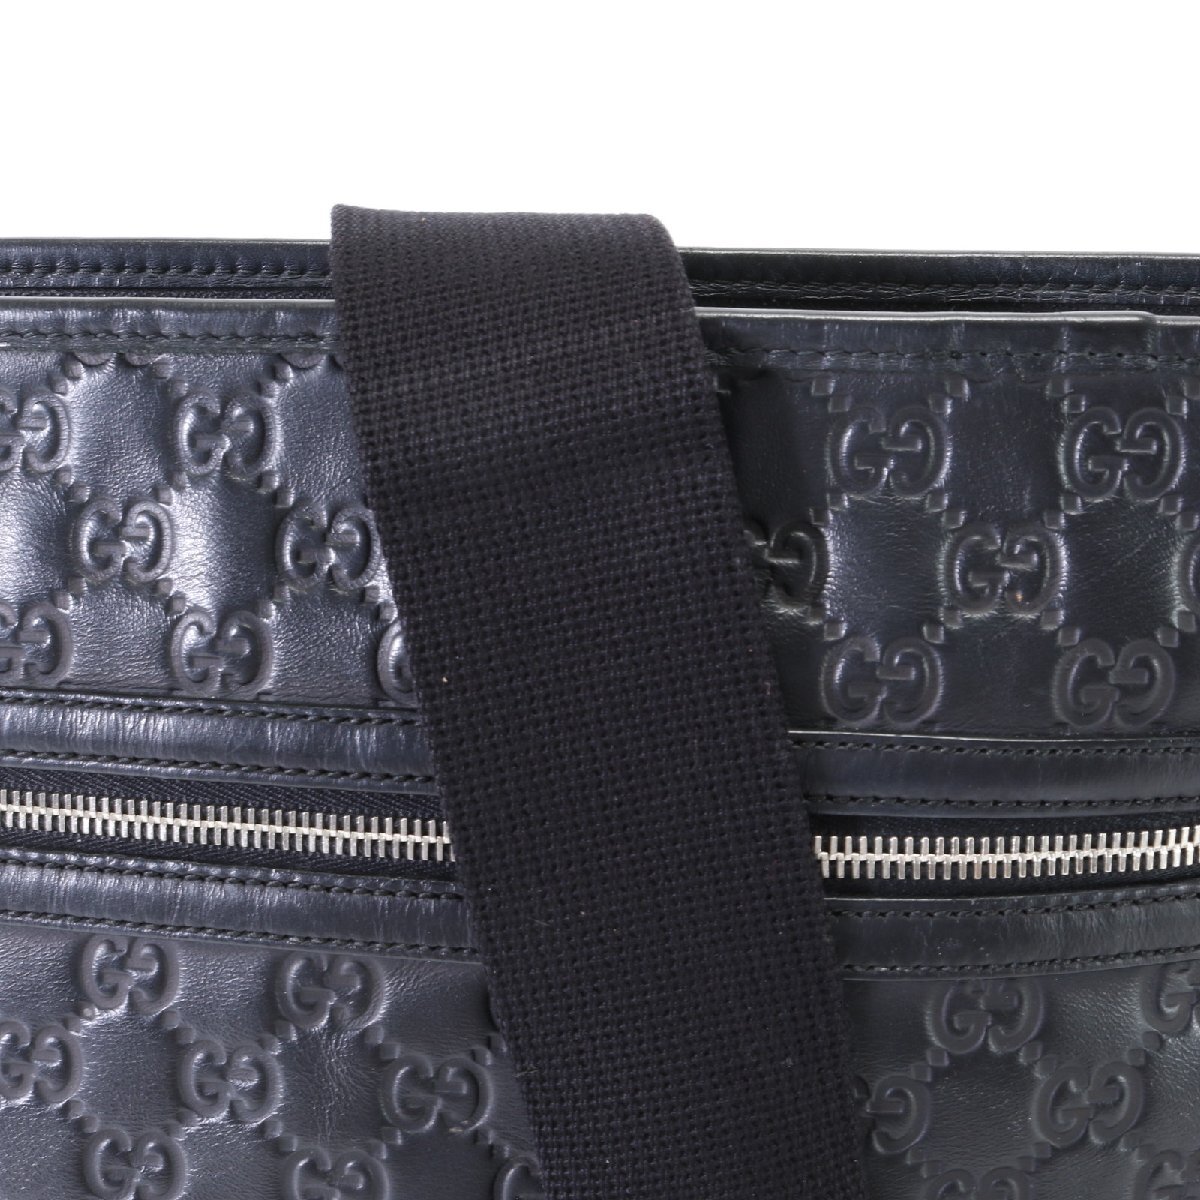 1 иен # превосходный товар # Gucci # Guccisima 322080 кожа сумка на плечо наклонный ..mesenja- ходить на работу натуральная кожа черный чёрный A4 мужской EHM T2-4